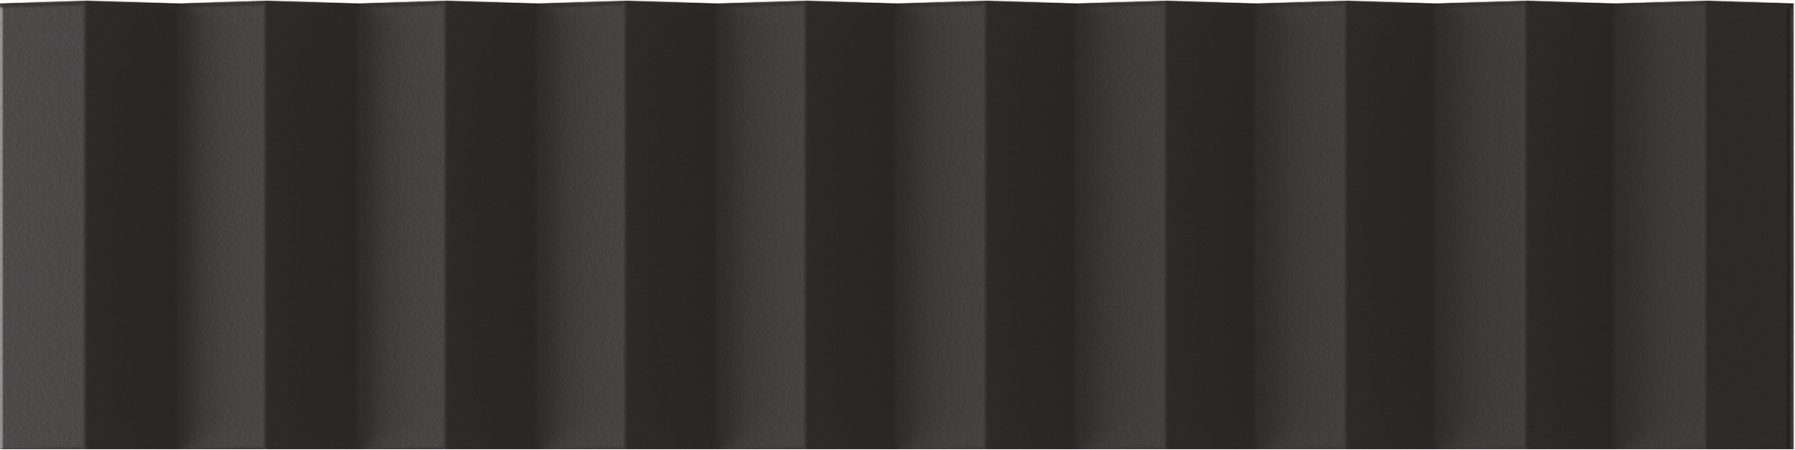 Керамическая плитка Wow Twin Peaks Up Nero 131547, цвет чёрный, поверхность матовая 3d (объёмная), под кирпич, 75x300